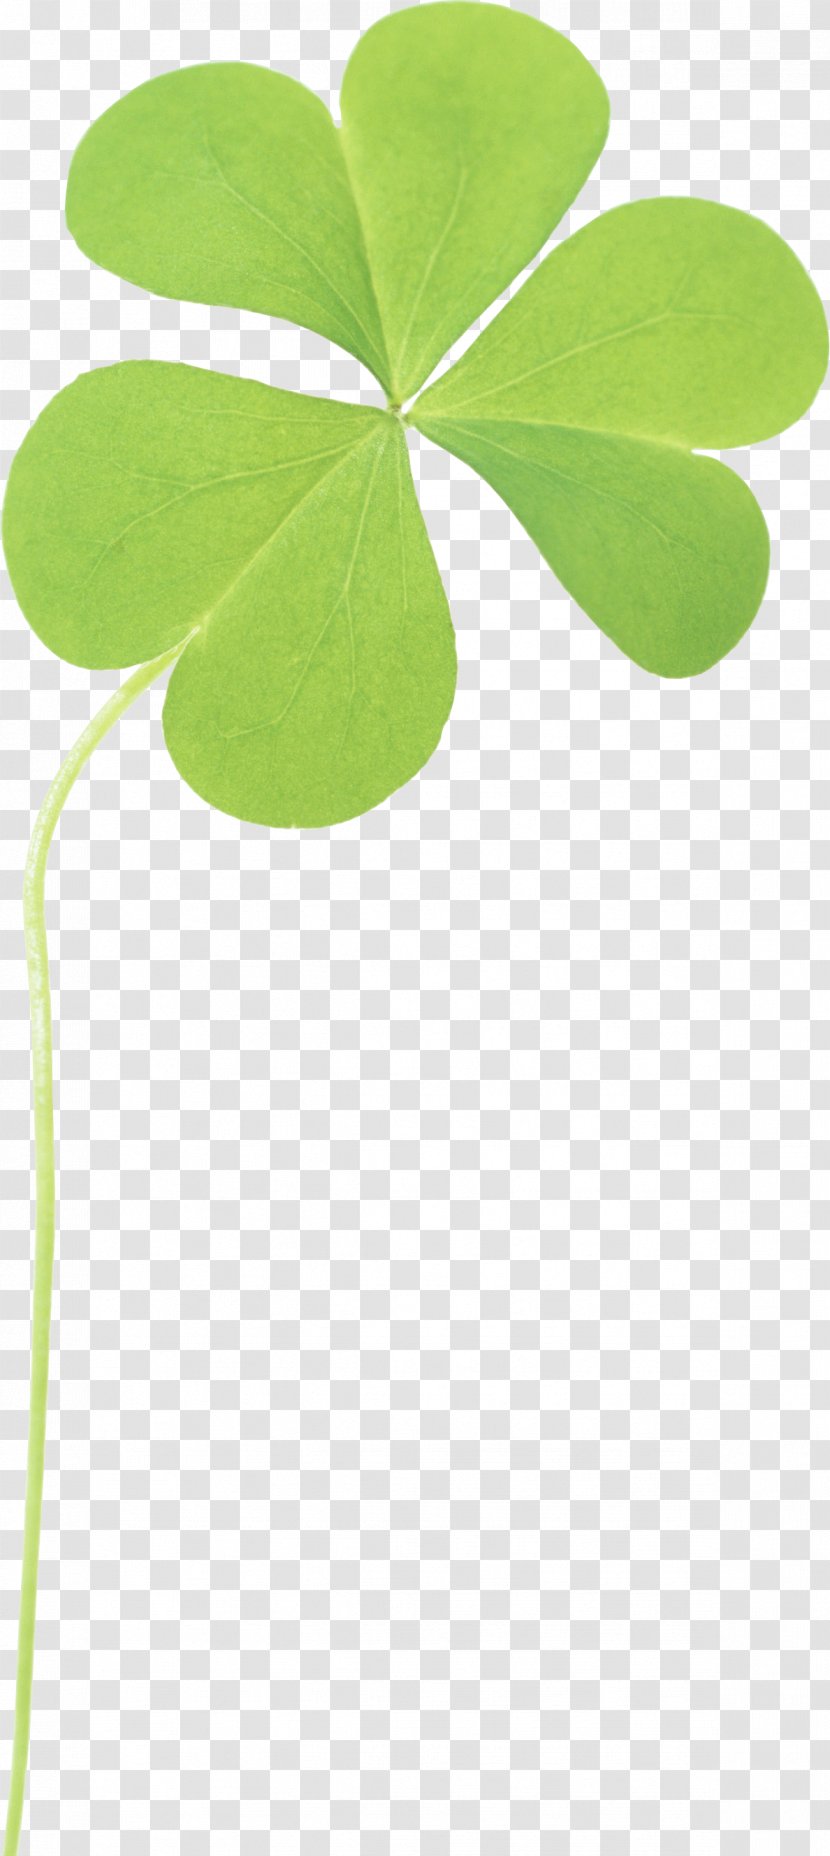 Four-leaf Clover Clip Art - Leaf - Image Transparent PNG